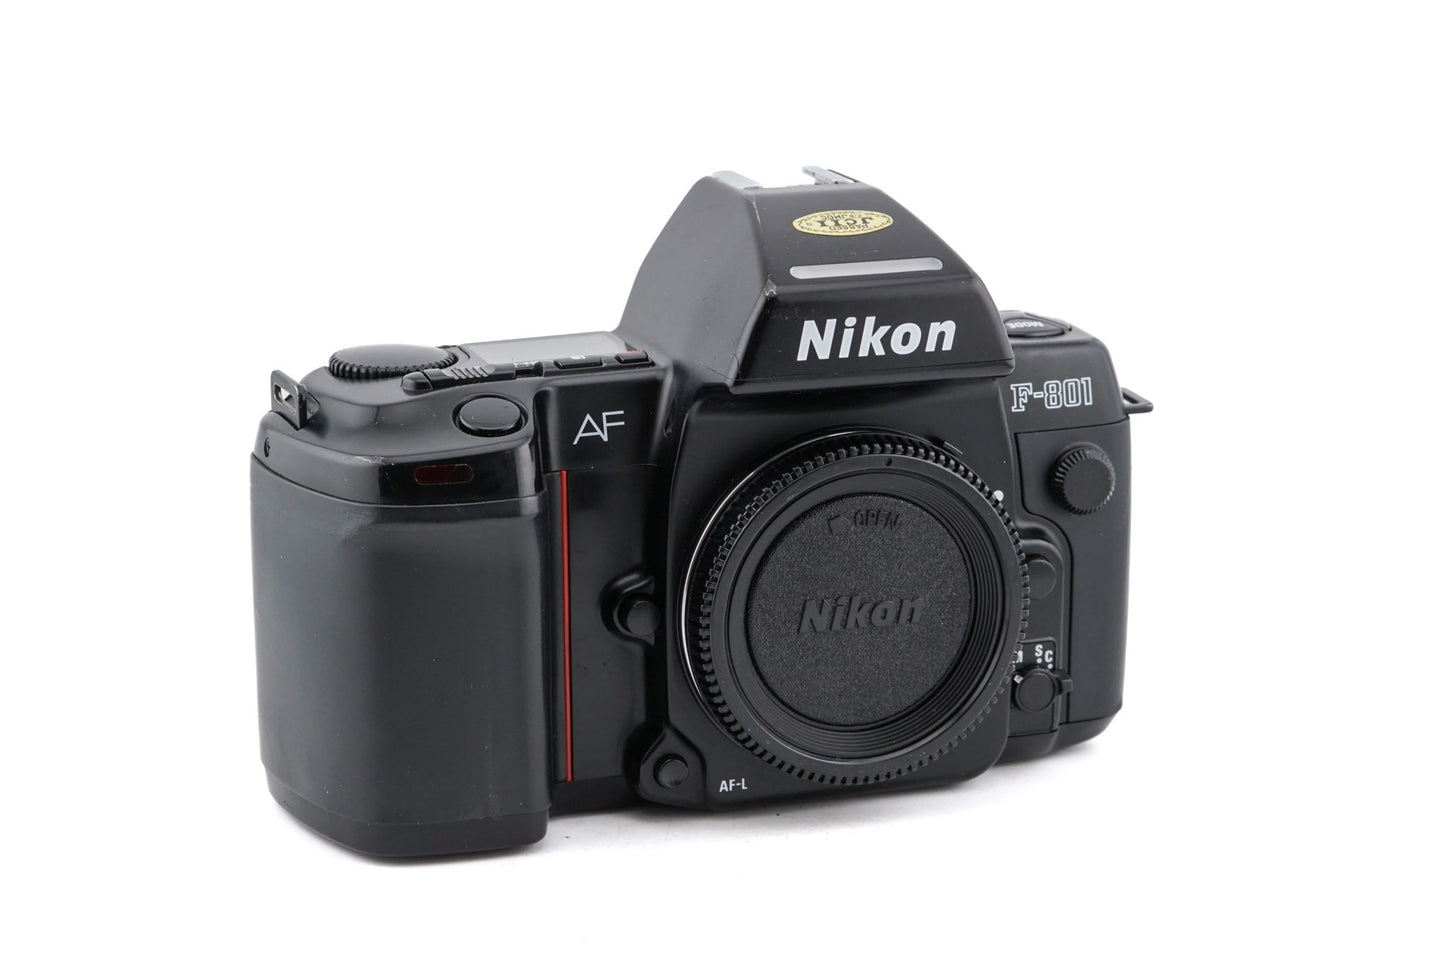 Nikon F-801